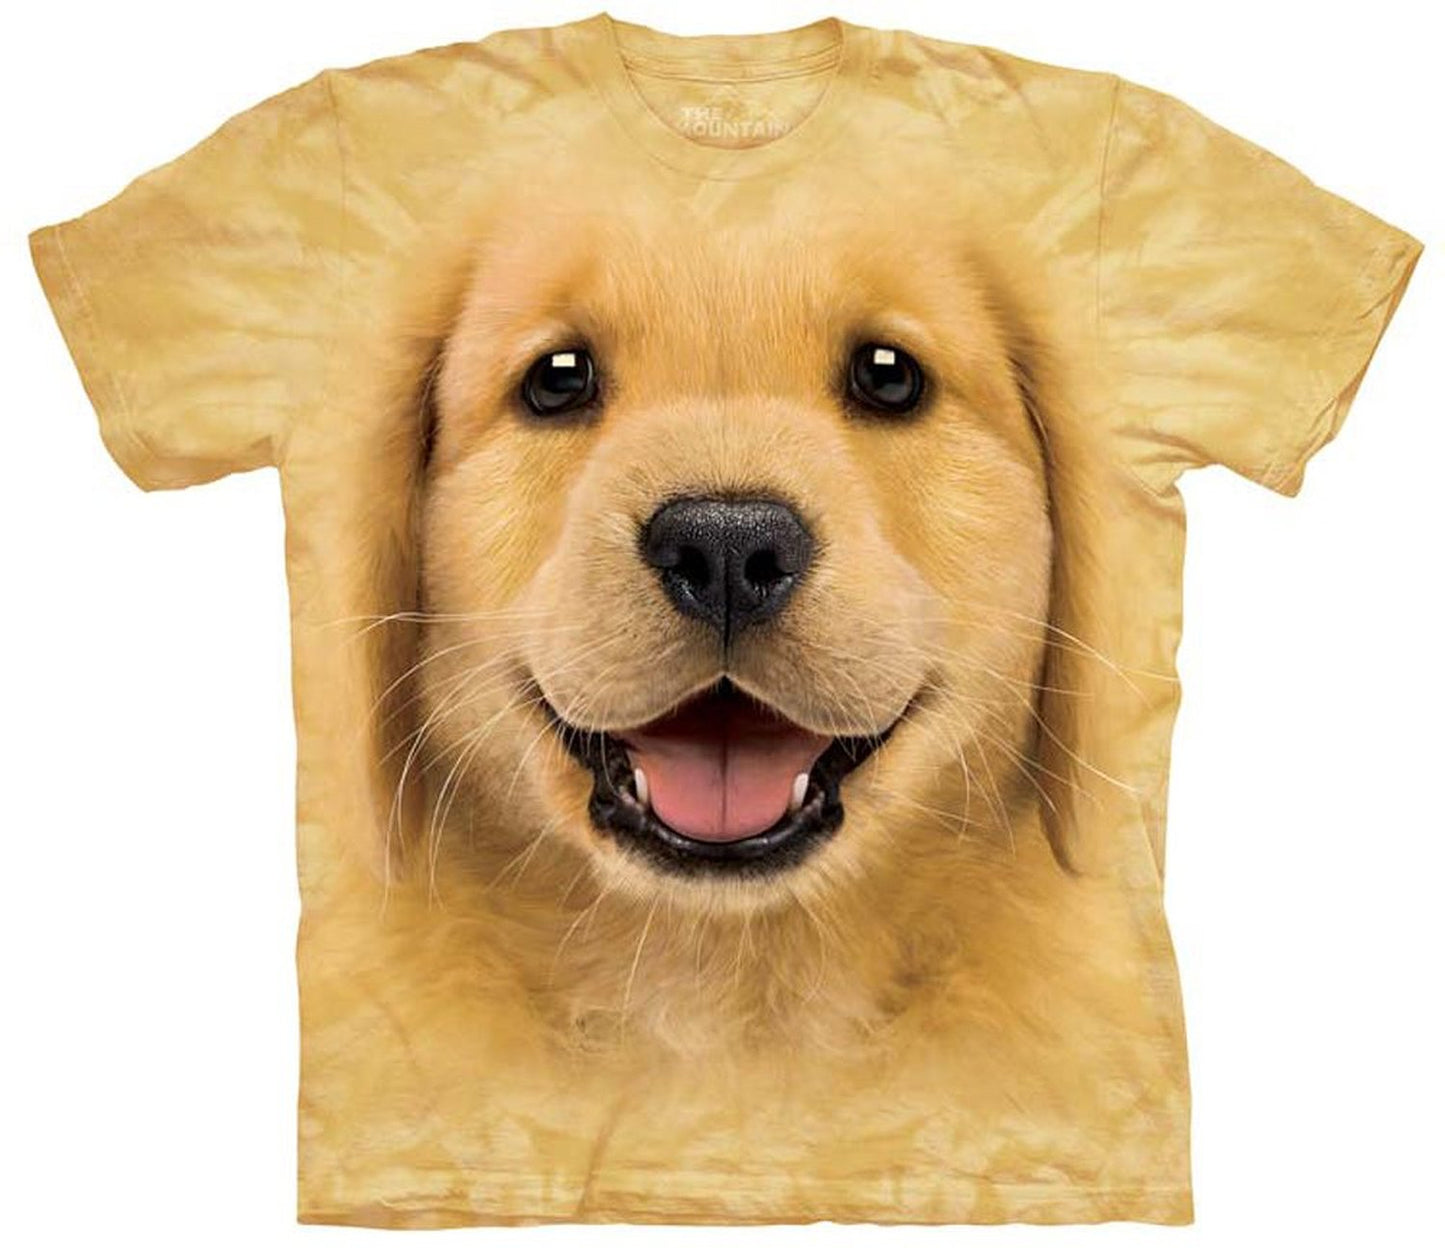 The Mountain Men's Golden Retriever Puppy T-Shirt